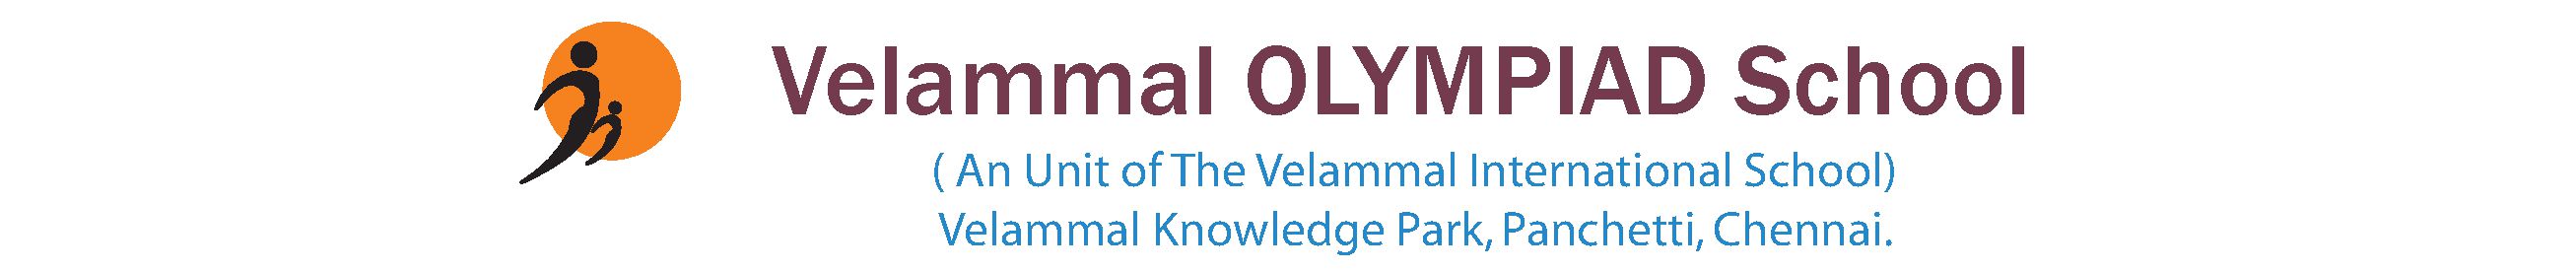 VELAMMAL OLYMPIAD SCHOOL